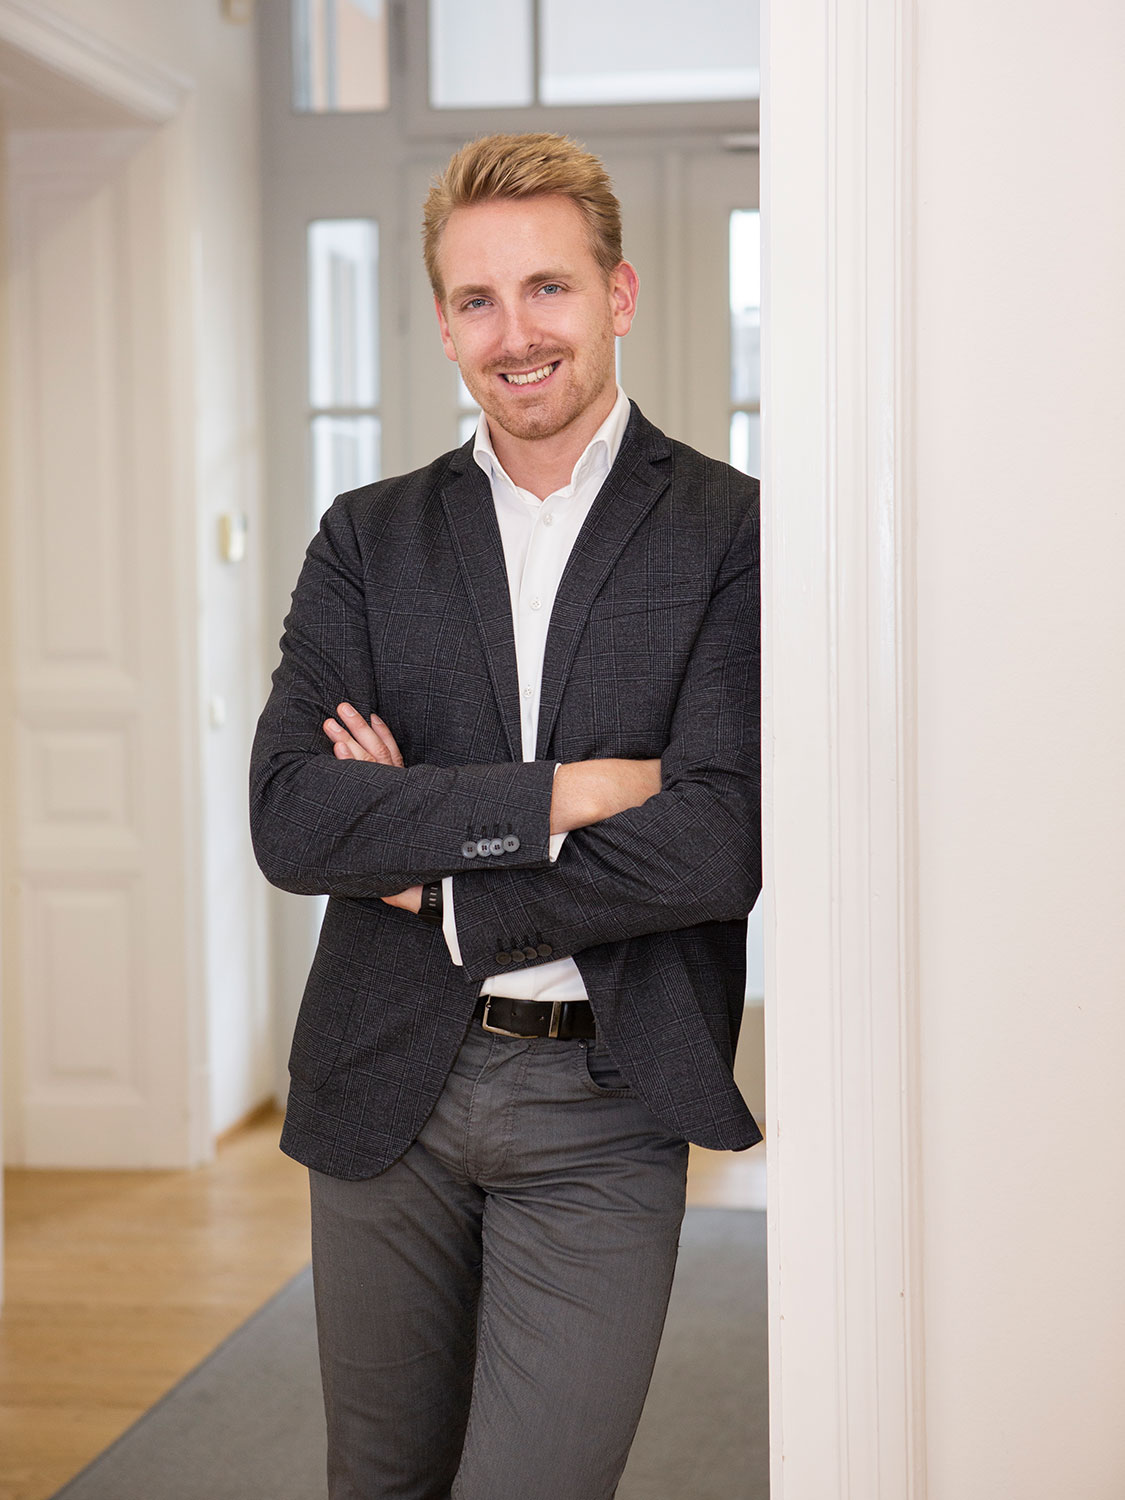 Rechtsanwalt Mag. Pascal Dreier, Partner bei Ulm Neger Partner Rechtsanwälte GmbH